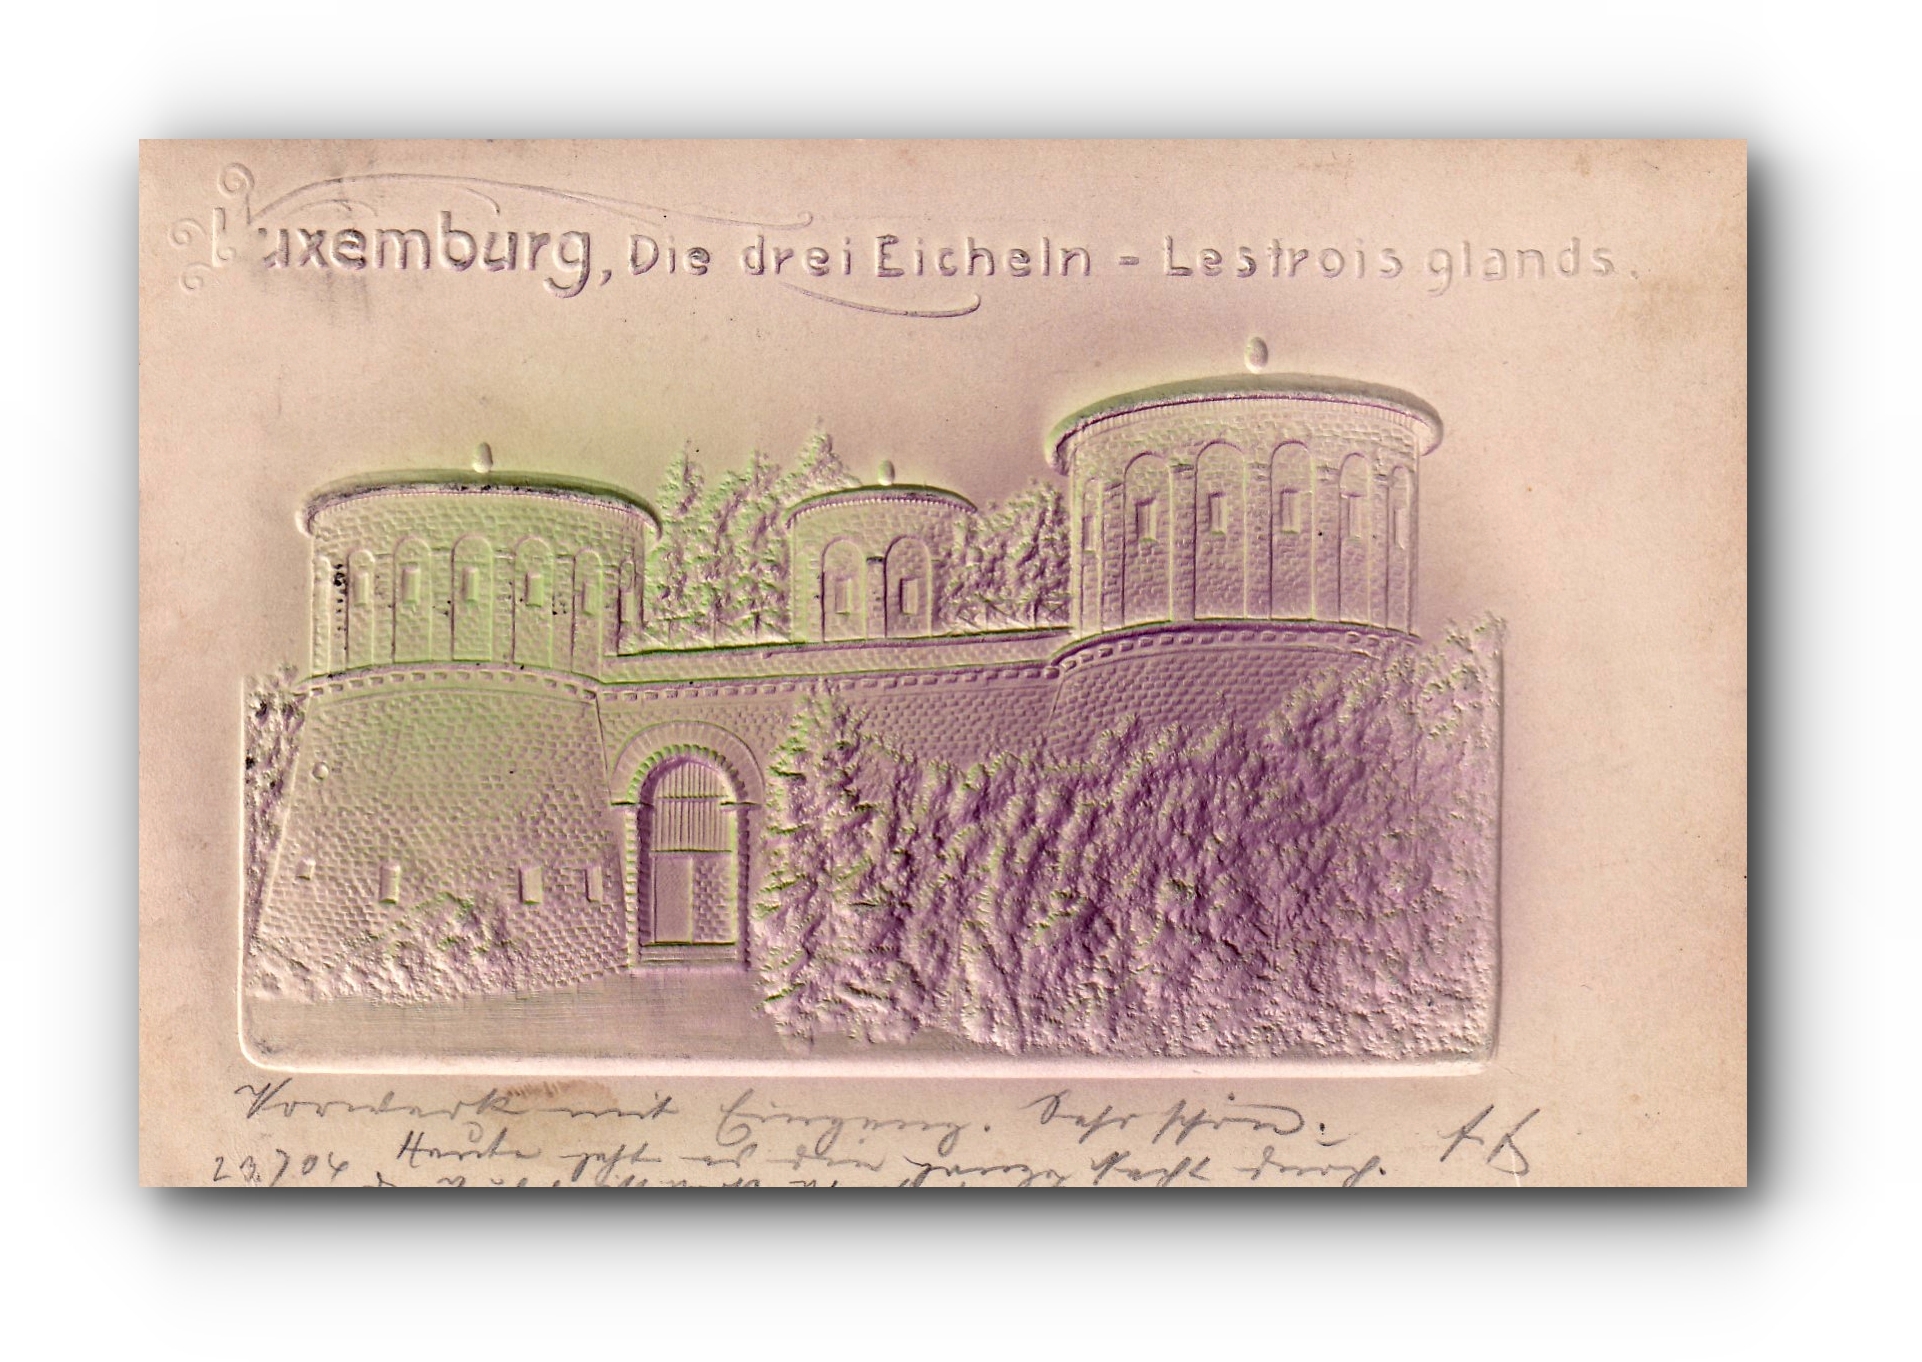 - Die drei Eicheln - Les trois glands - LUXEMBURG - carte relief - 24.07.1904 -